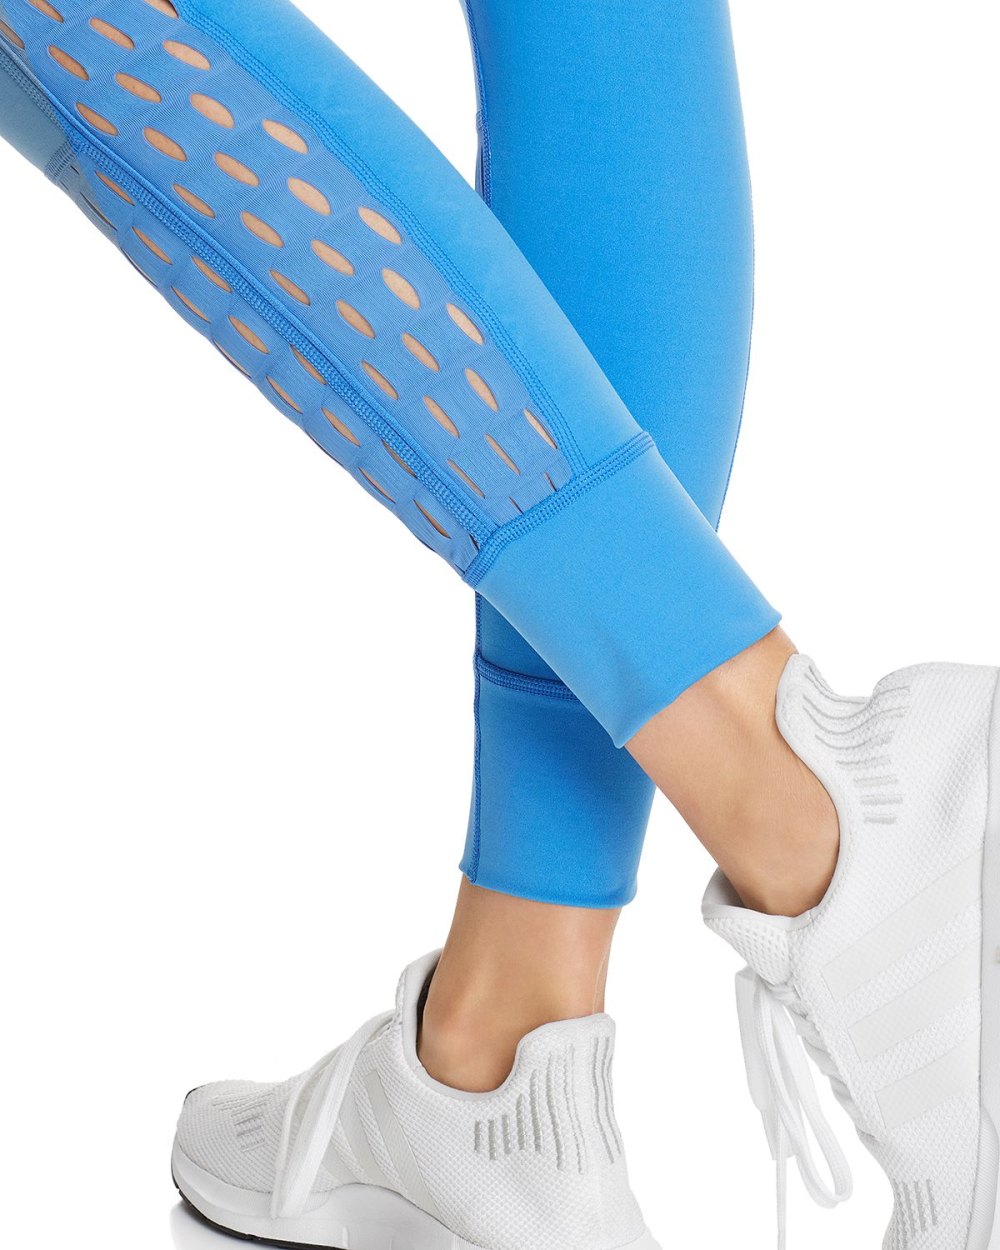 blue leggings stella mccartney adidas